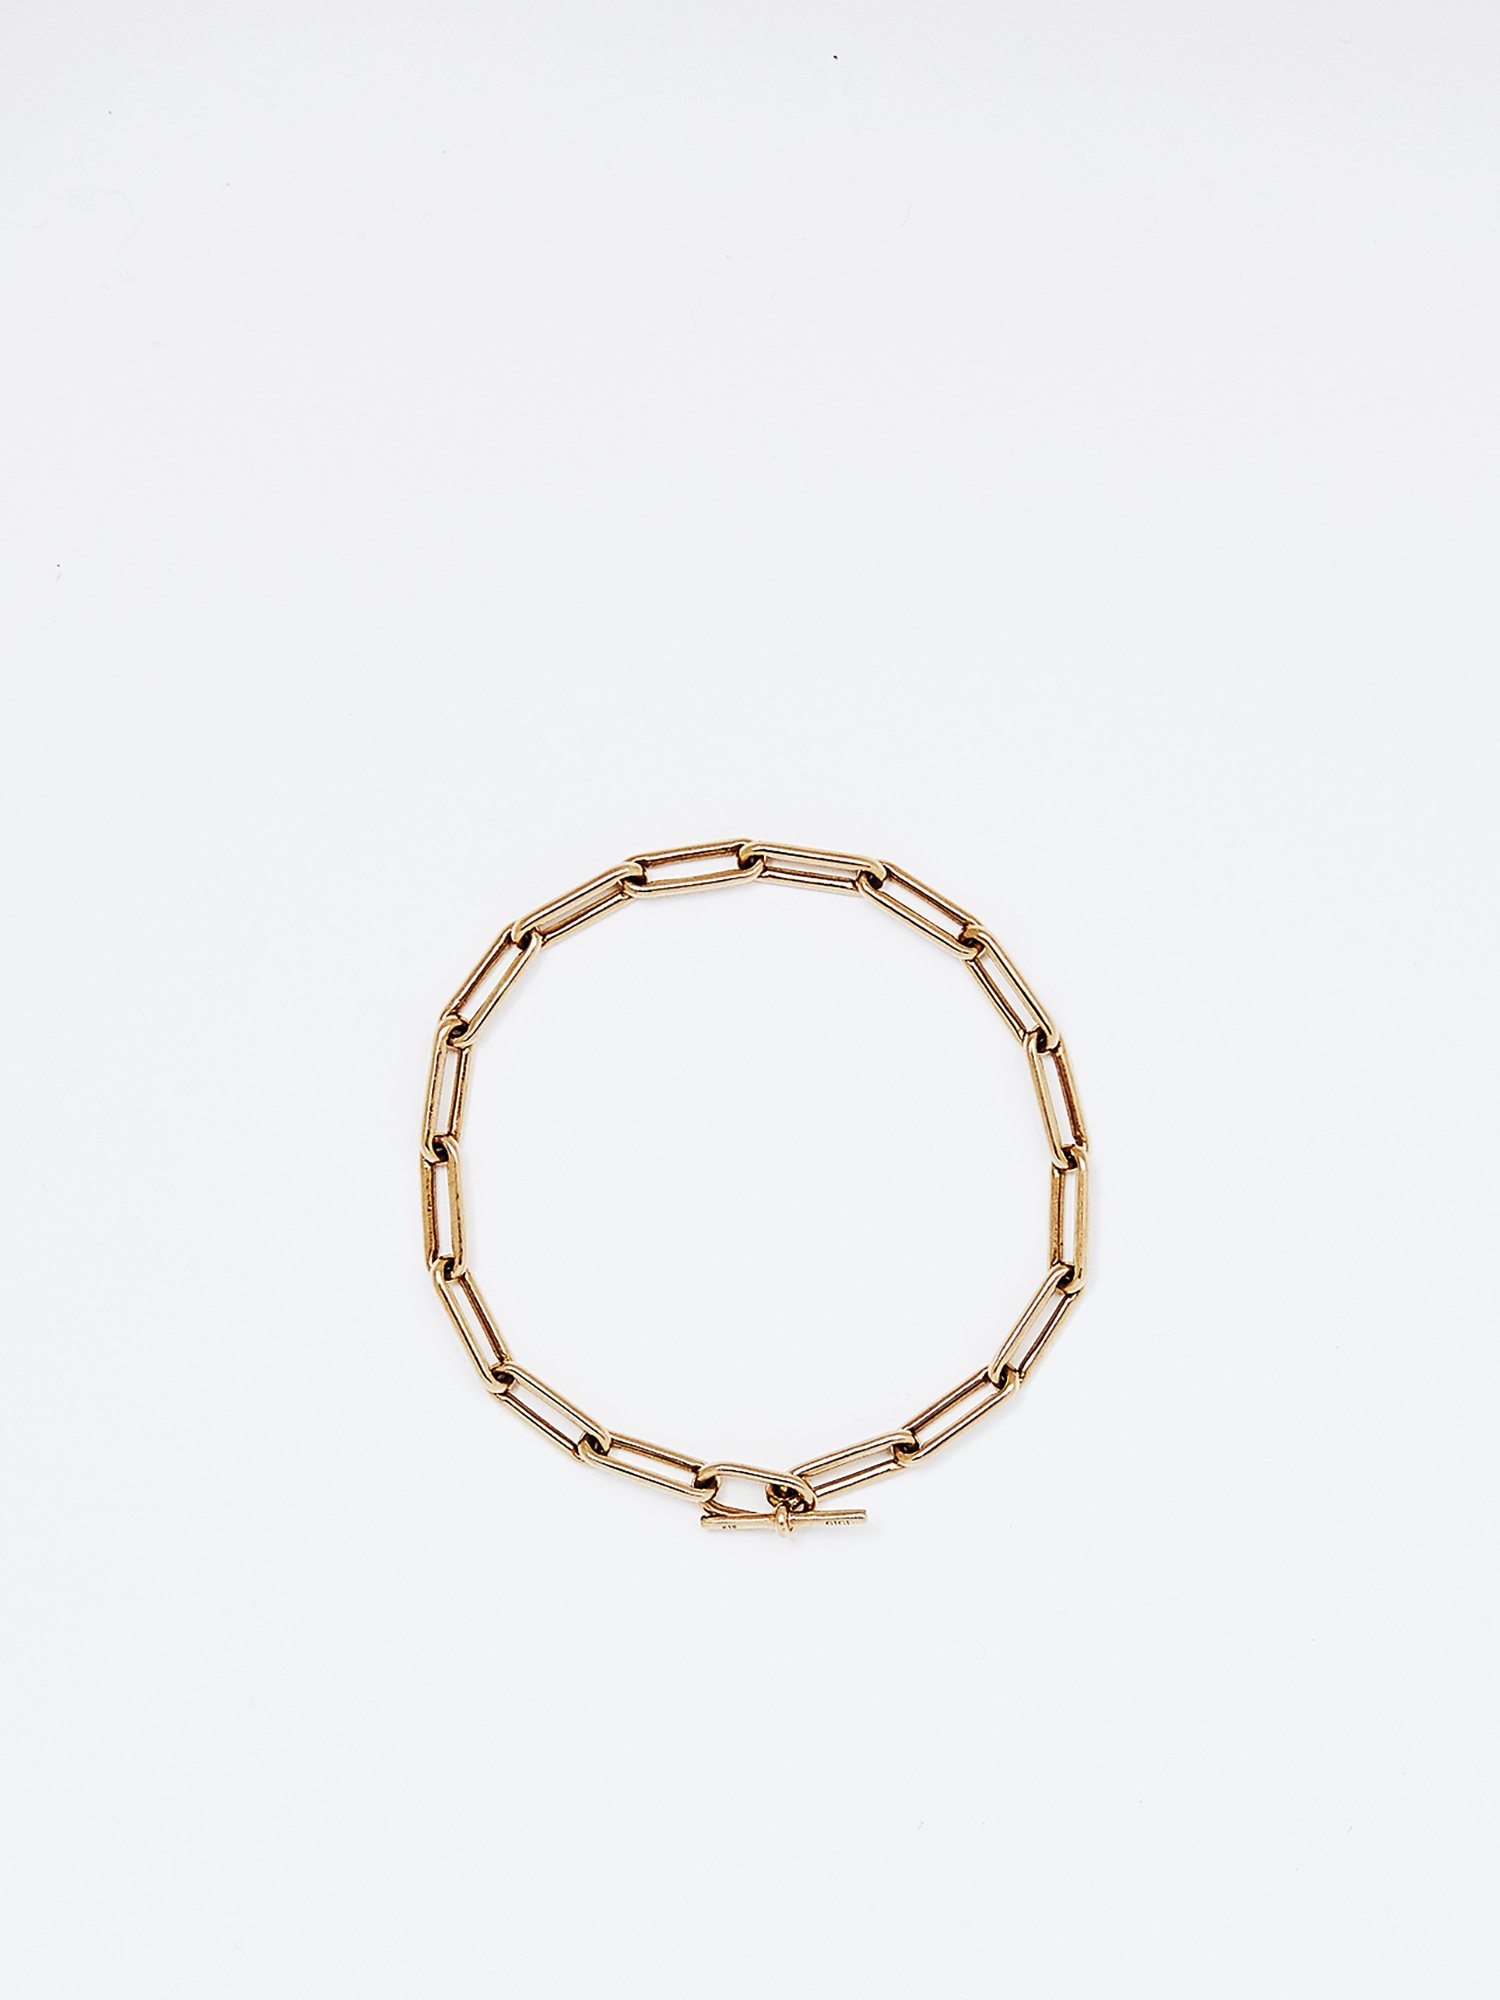  HELIOS / Boned chain bracelet